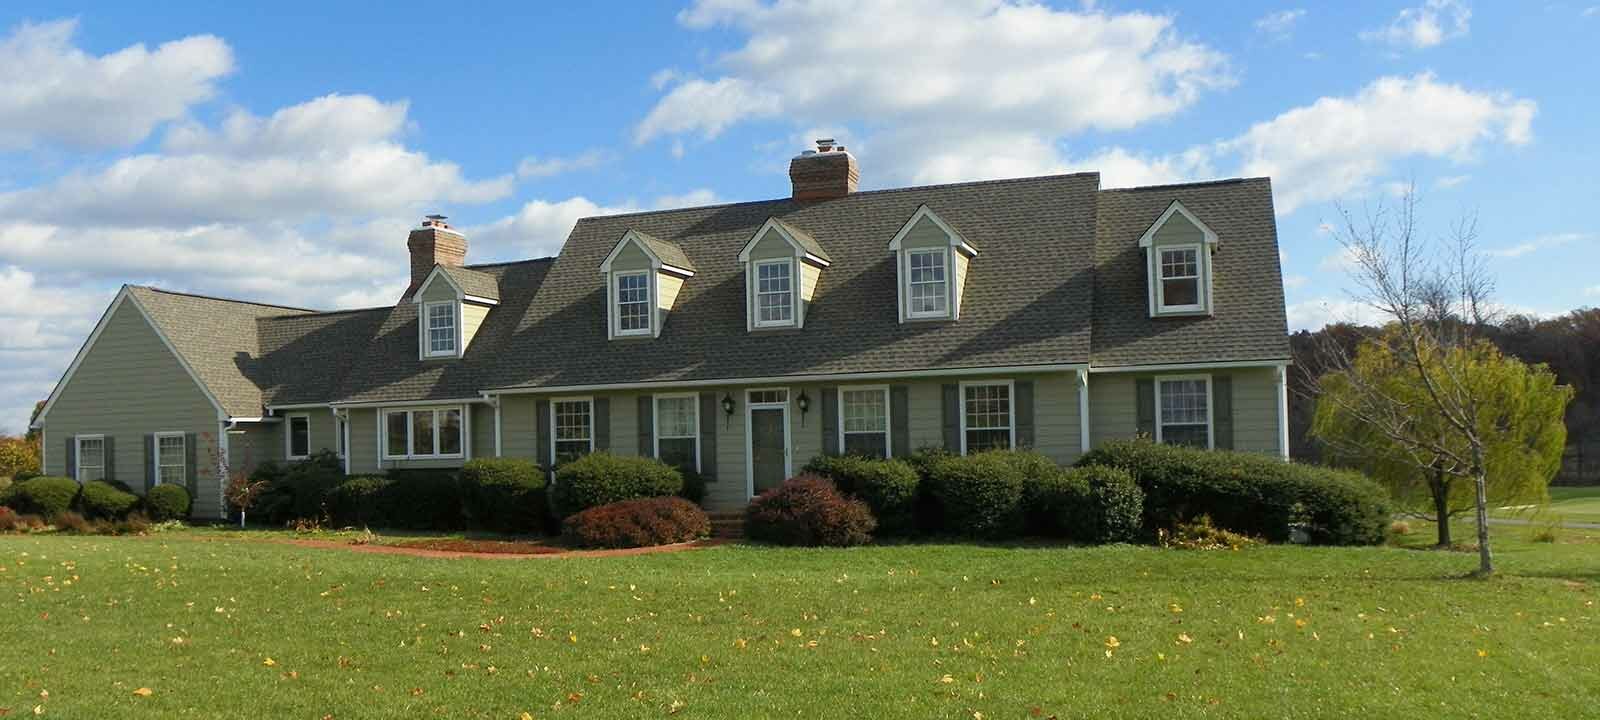 Residential Roofing in Arlington VA